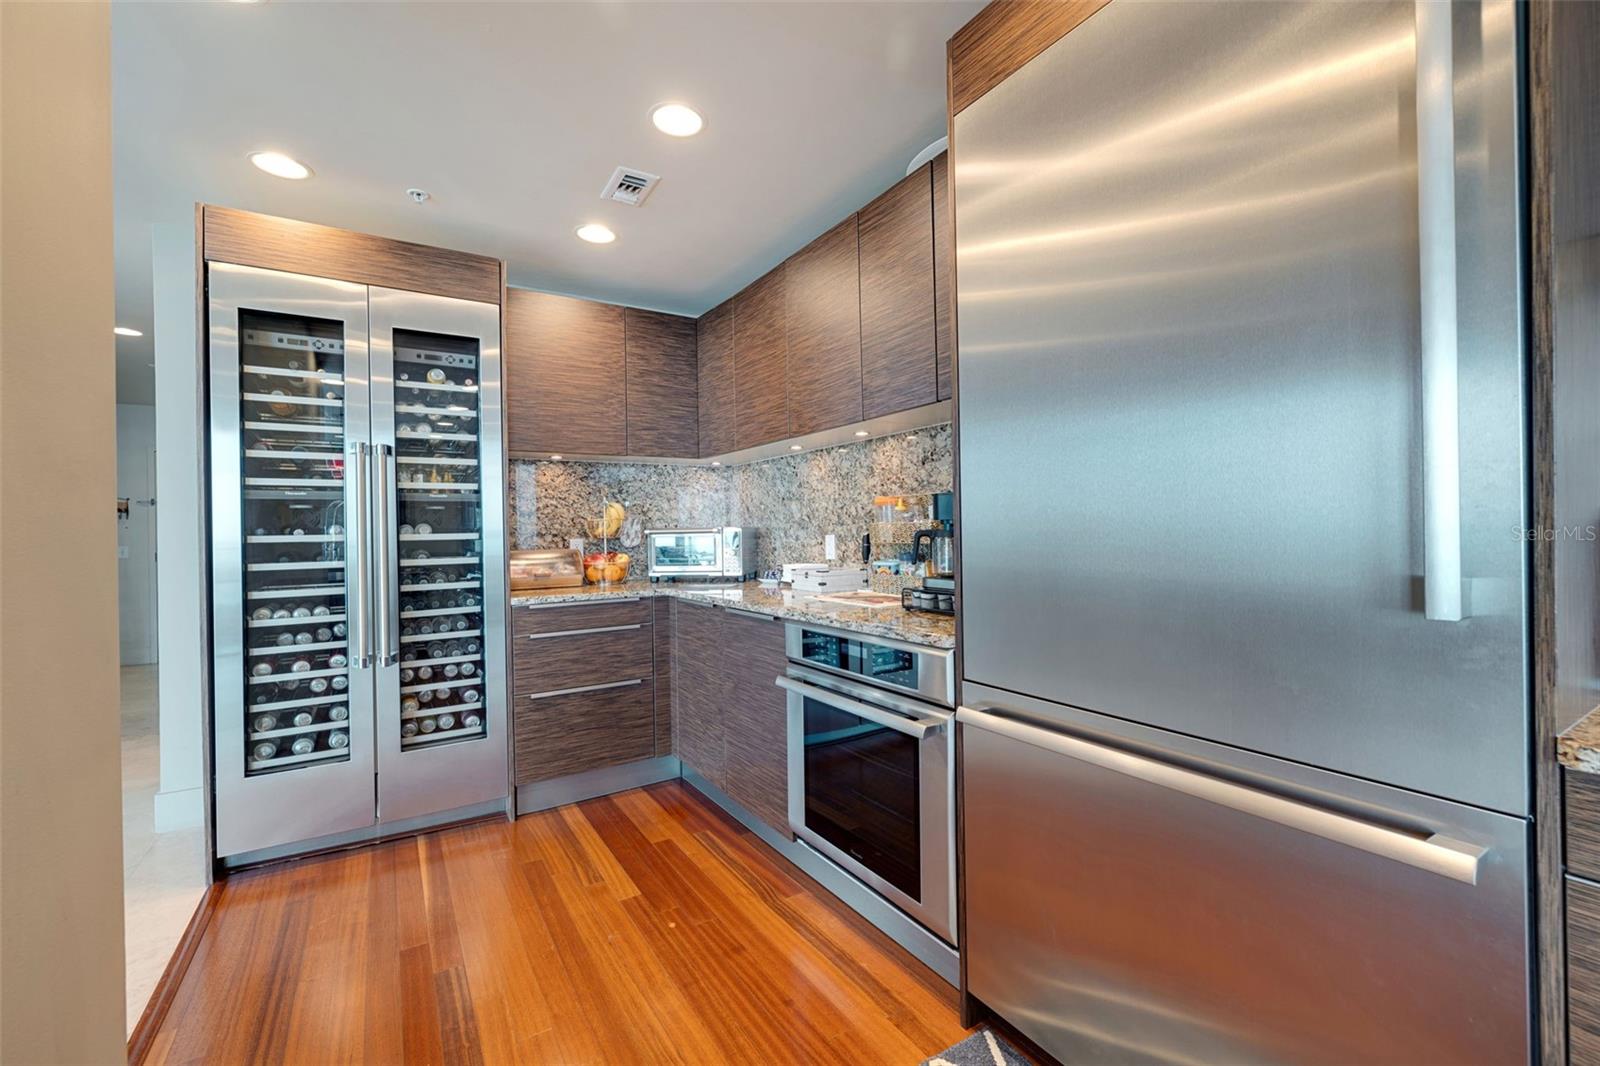 Double door wine fridge, built in oven, oversized refrigerator, all Thermador Appliances